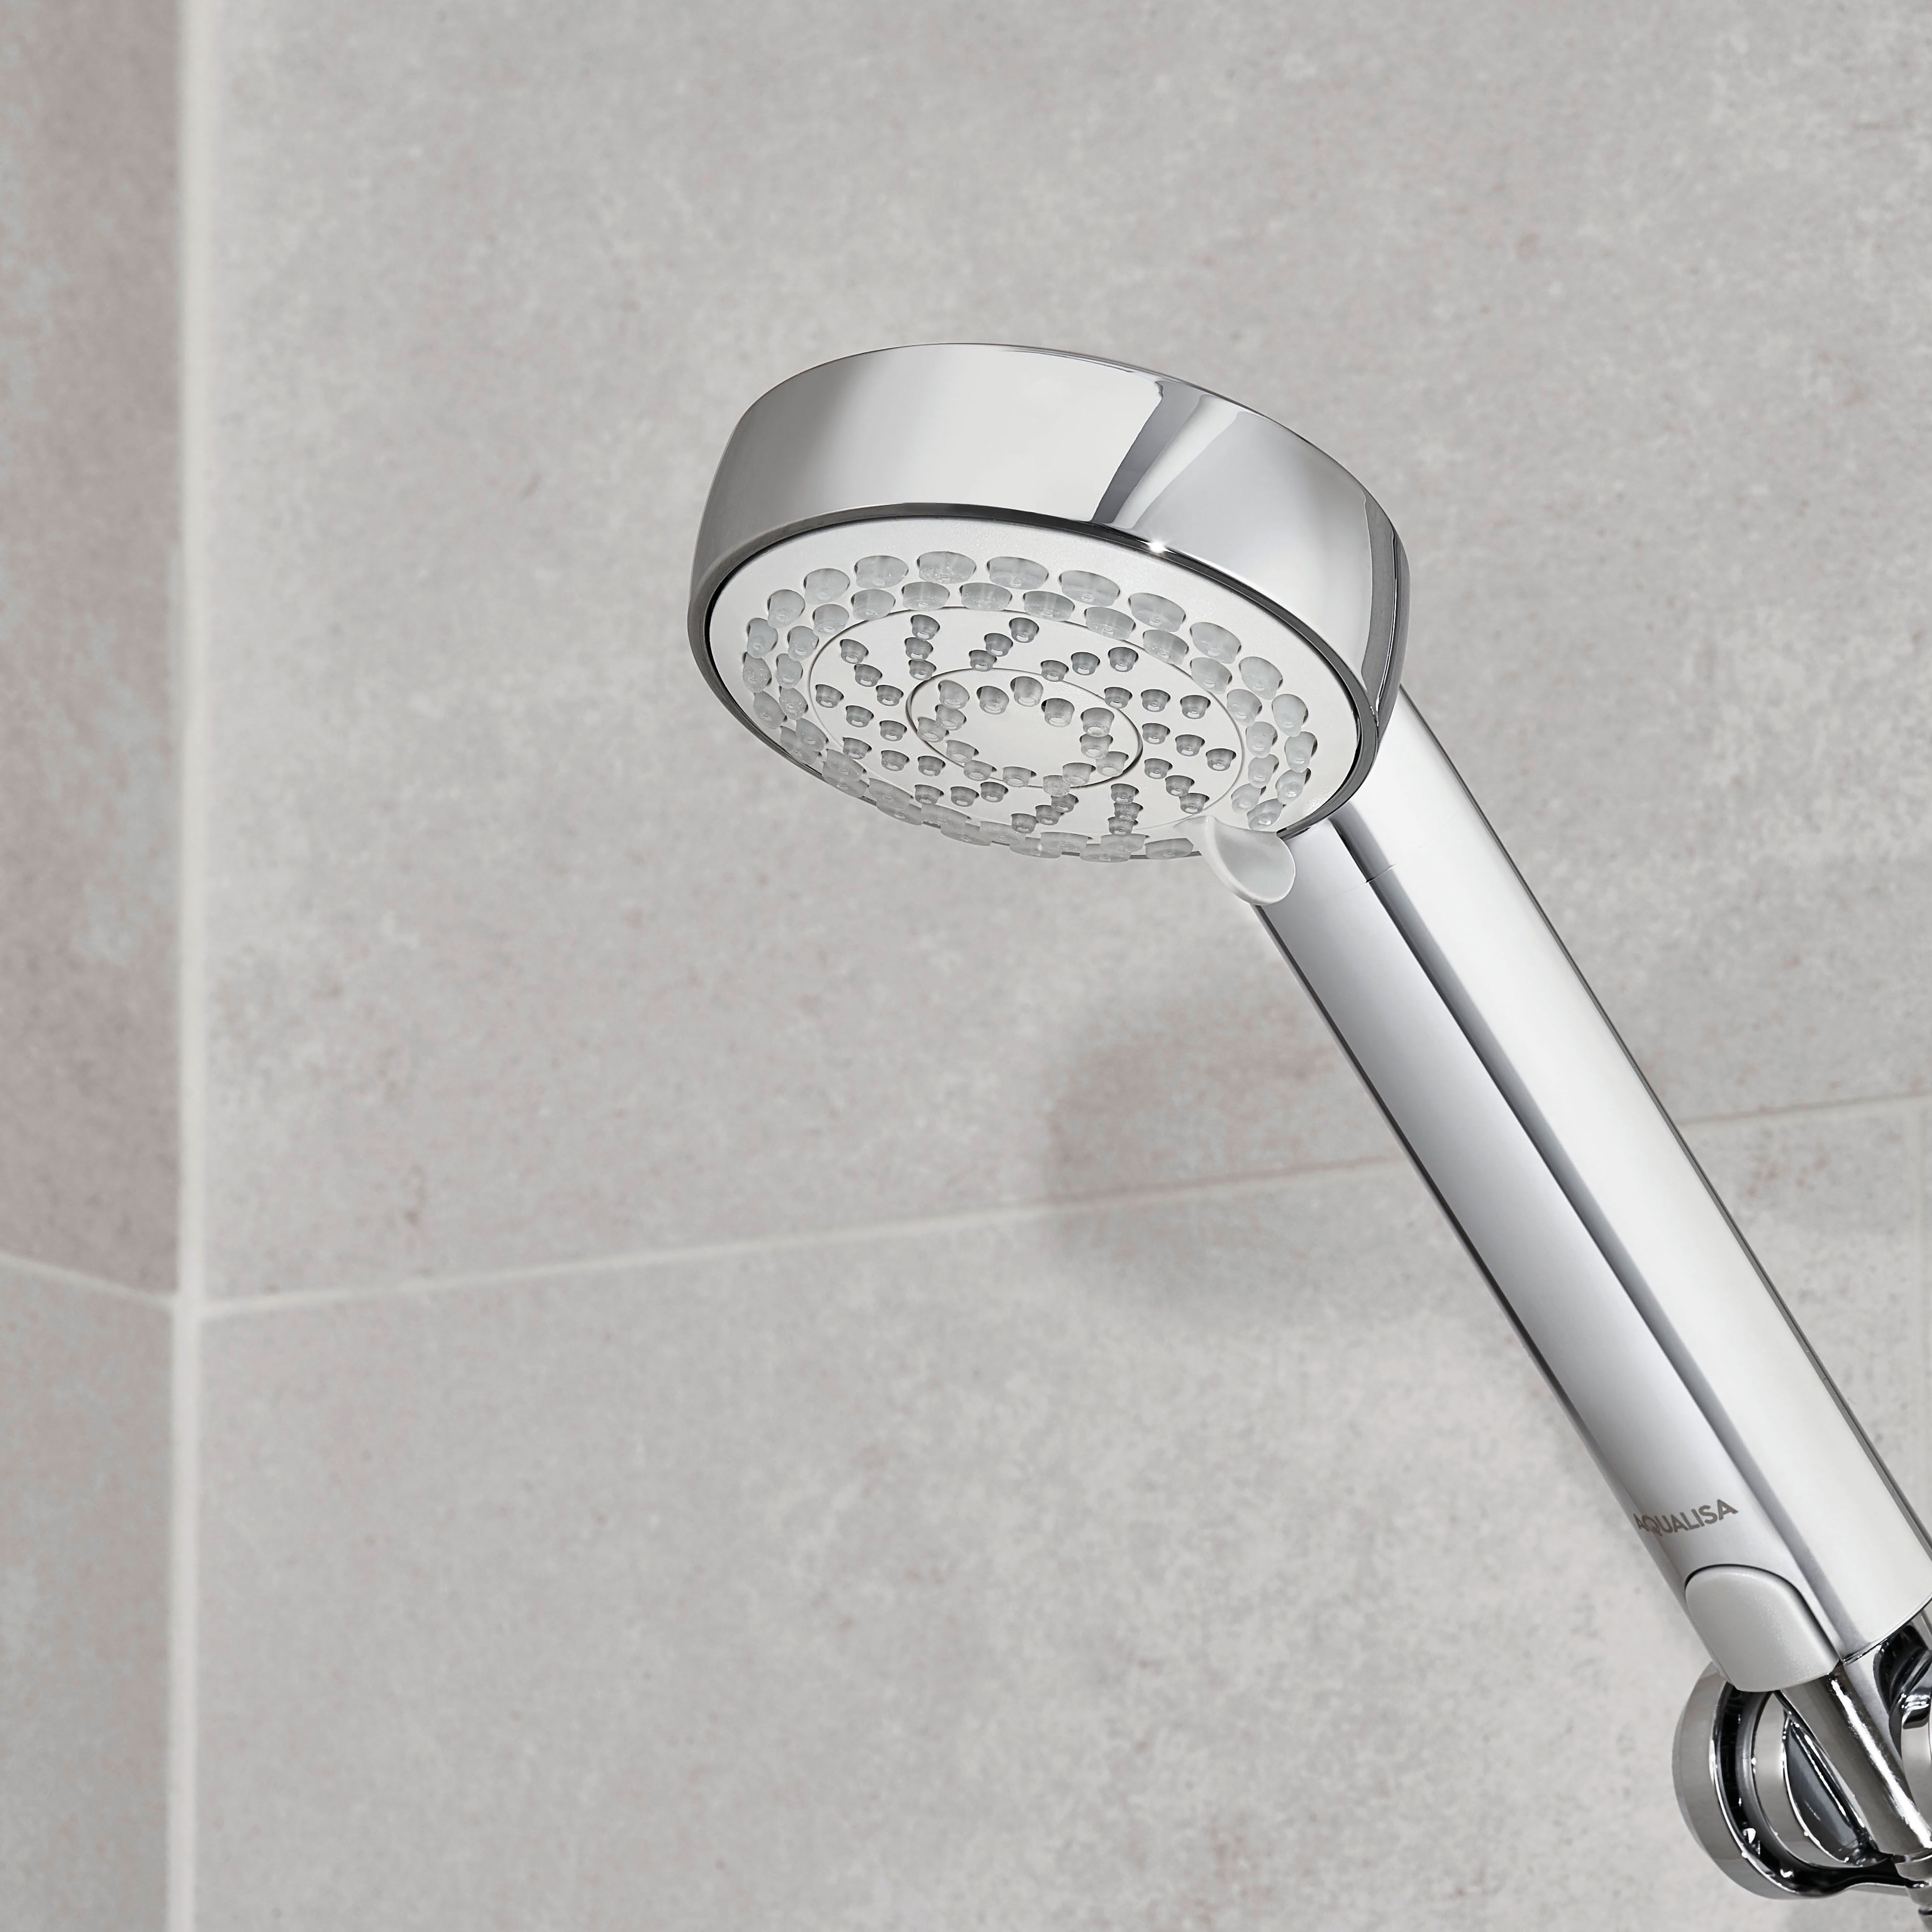 Aqualisa Visage Smart Concealed valve Gravity-pumped Digital Shower with overflow bath filler & Adjustable head